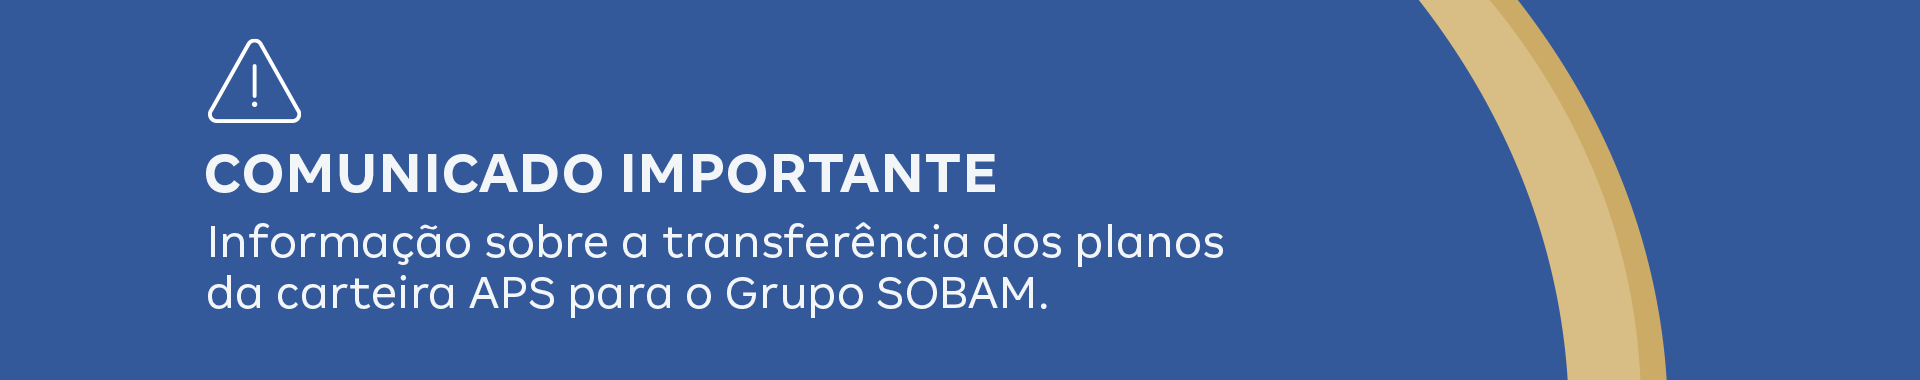 COMUNICADO IMPORTANTE Informação sobre a transferência dos planos da carteira APS para o grupo SOBAM